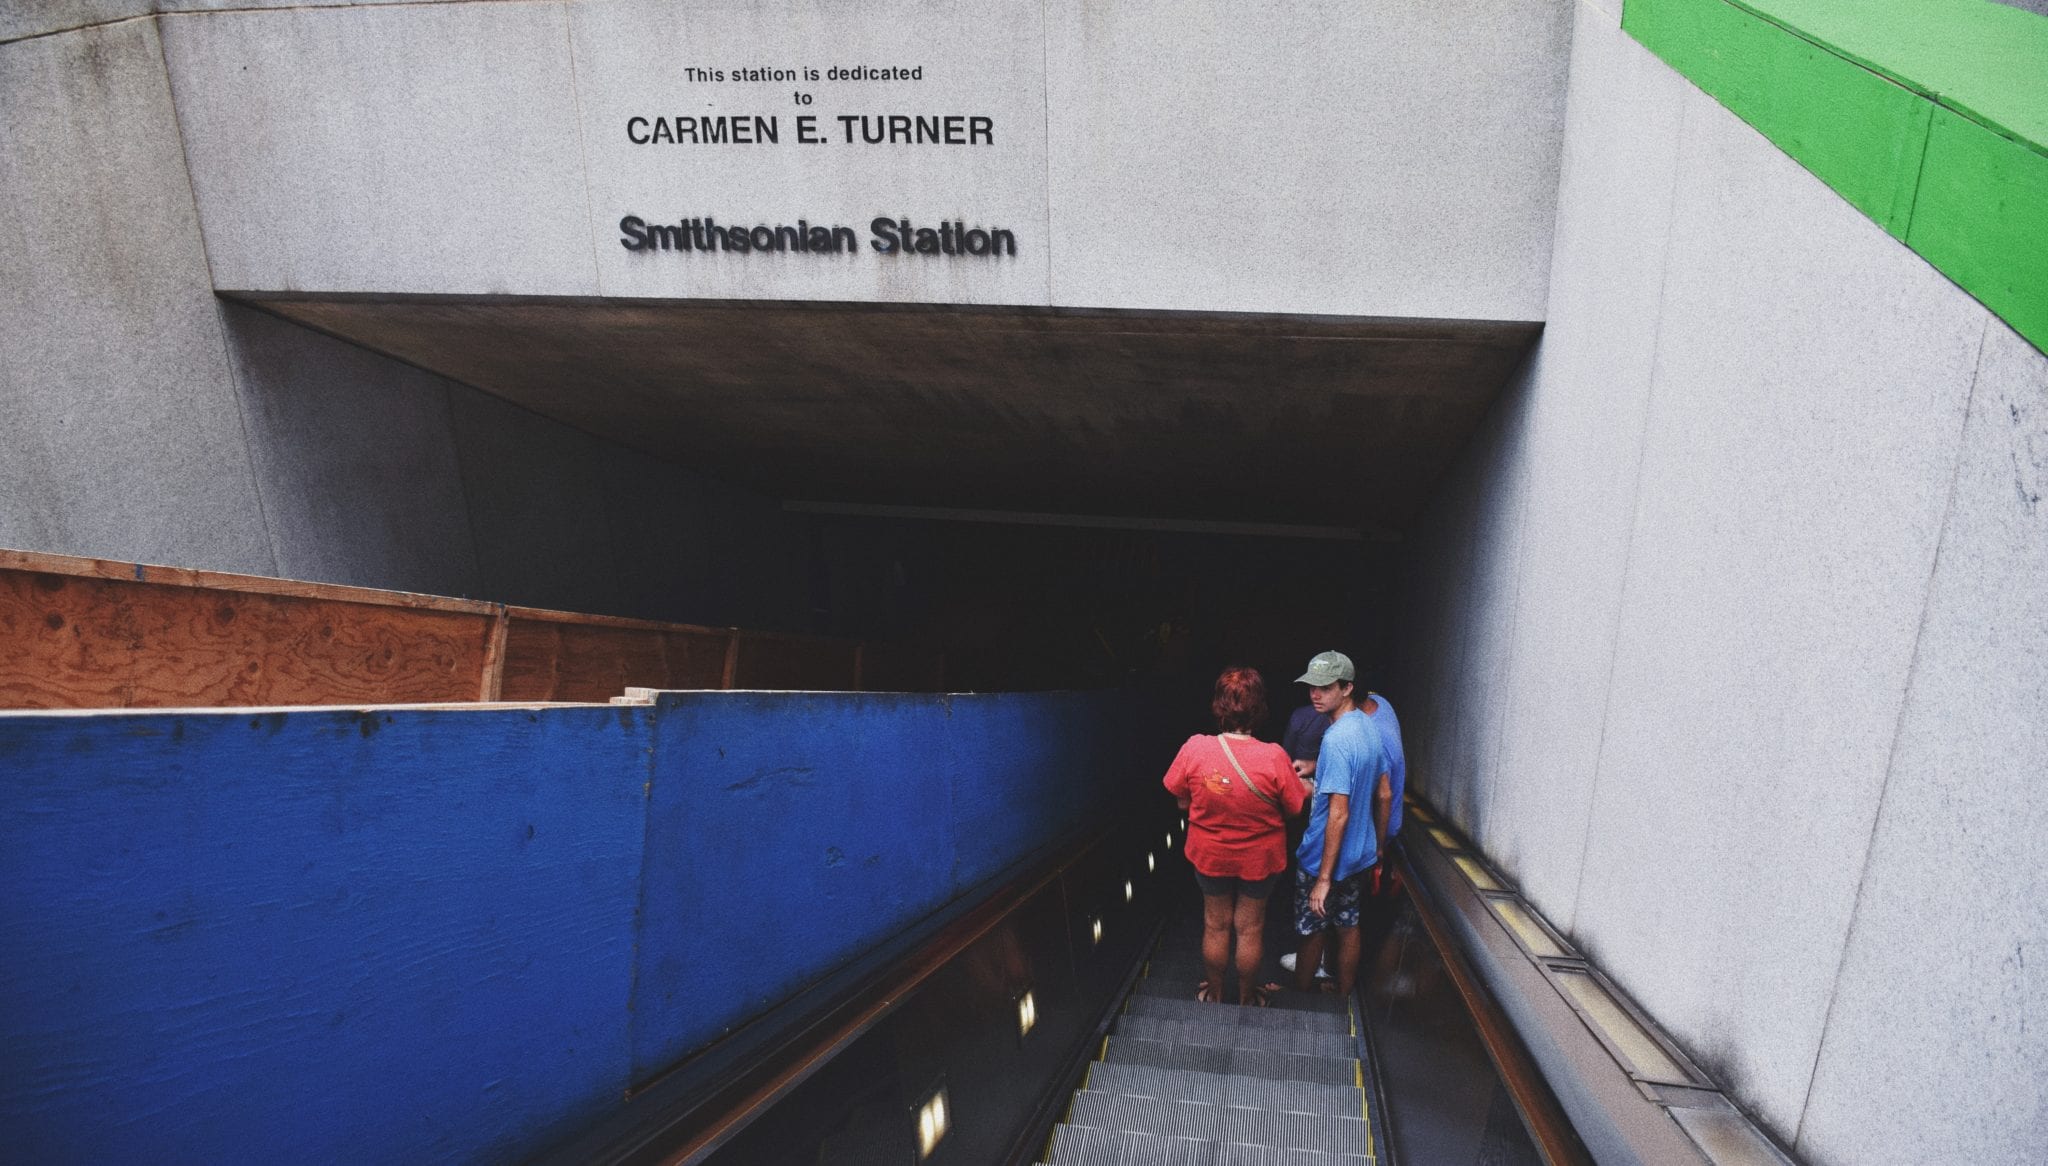 Carmen E. Turner Memorial at Smithsonian Station